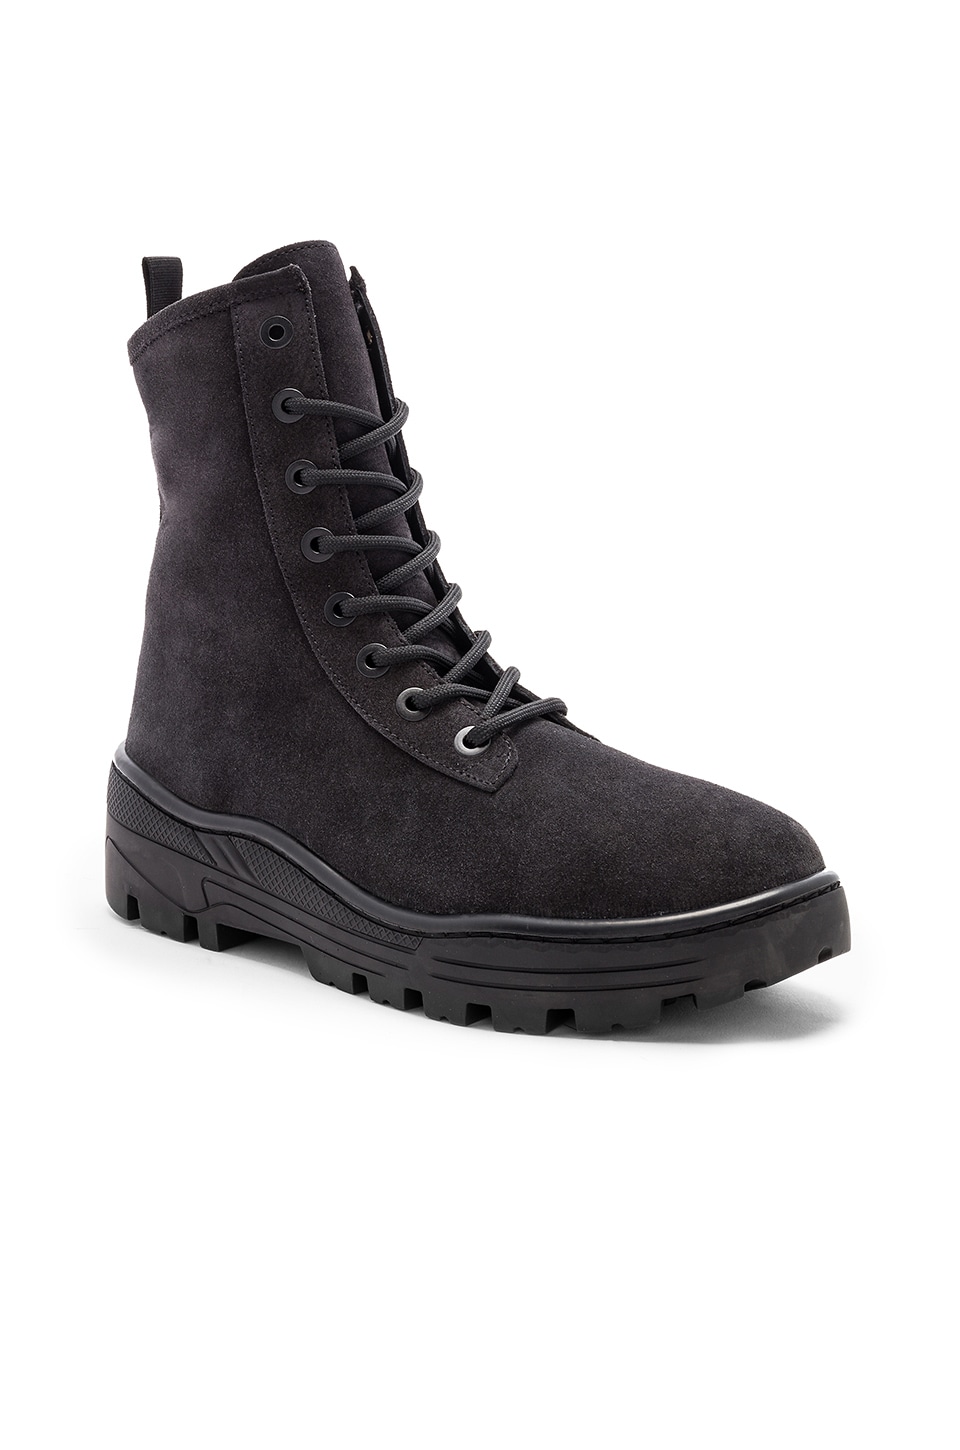 yeezy graphite boots